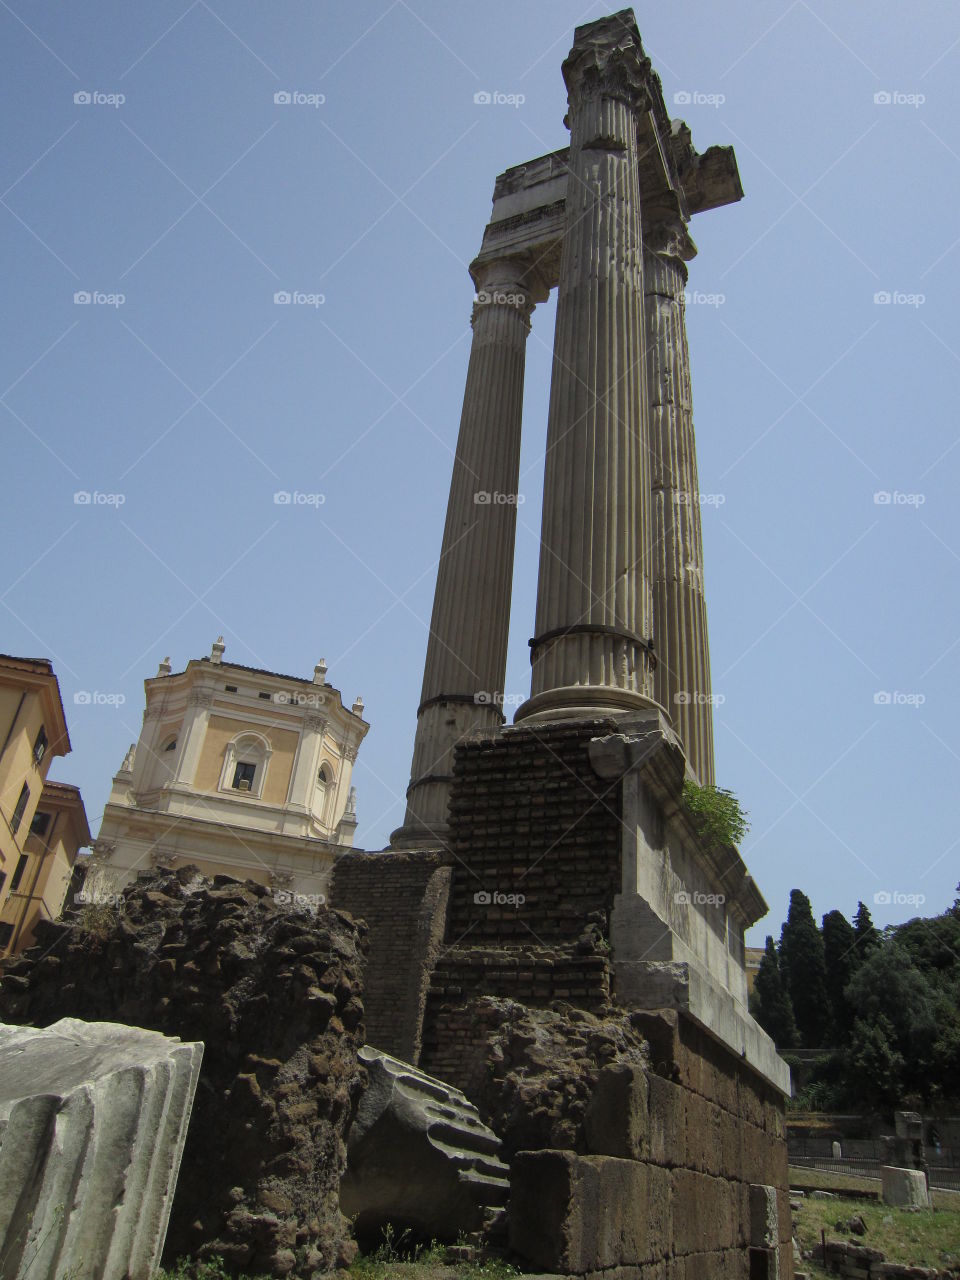 Temple of Apollo Sosianus